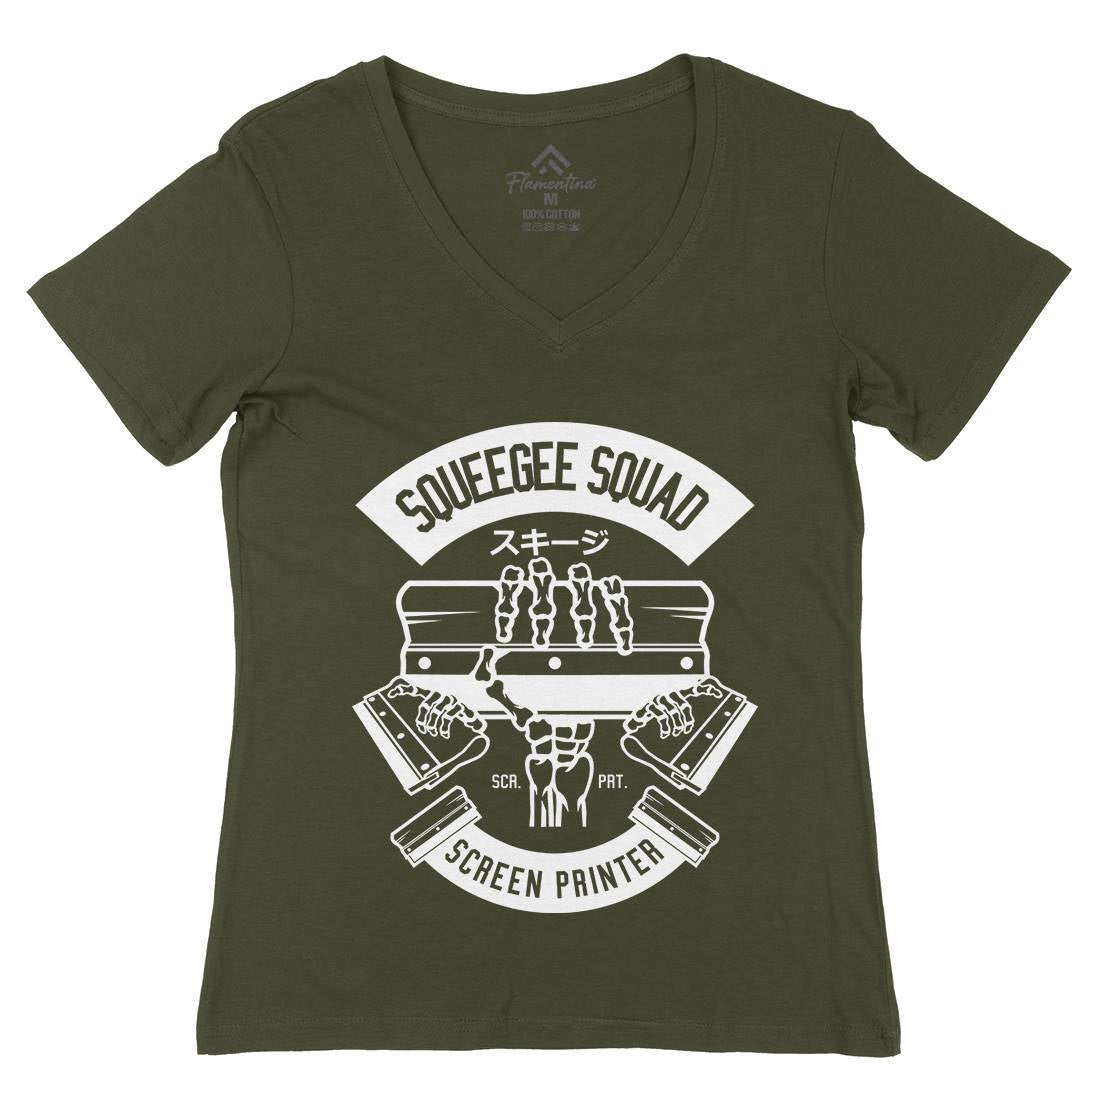 Squeegee Squad Womens Organic V-Neck T-Shirt Retro B642